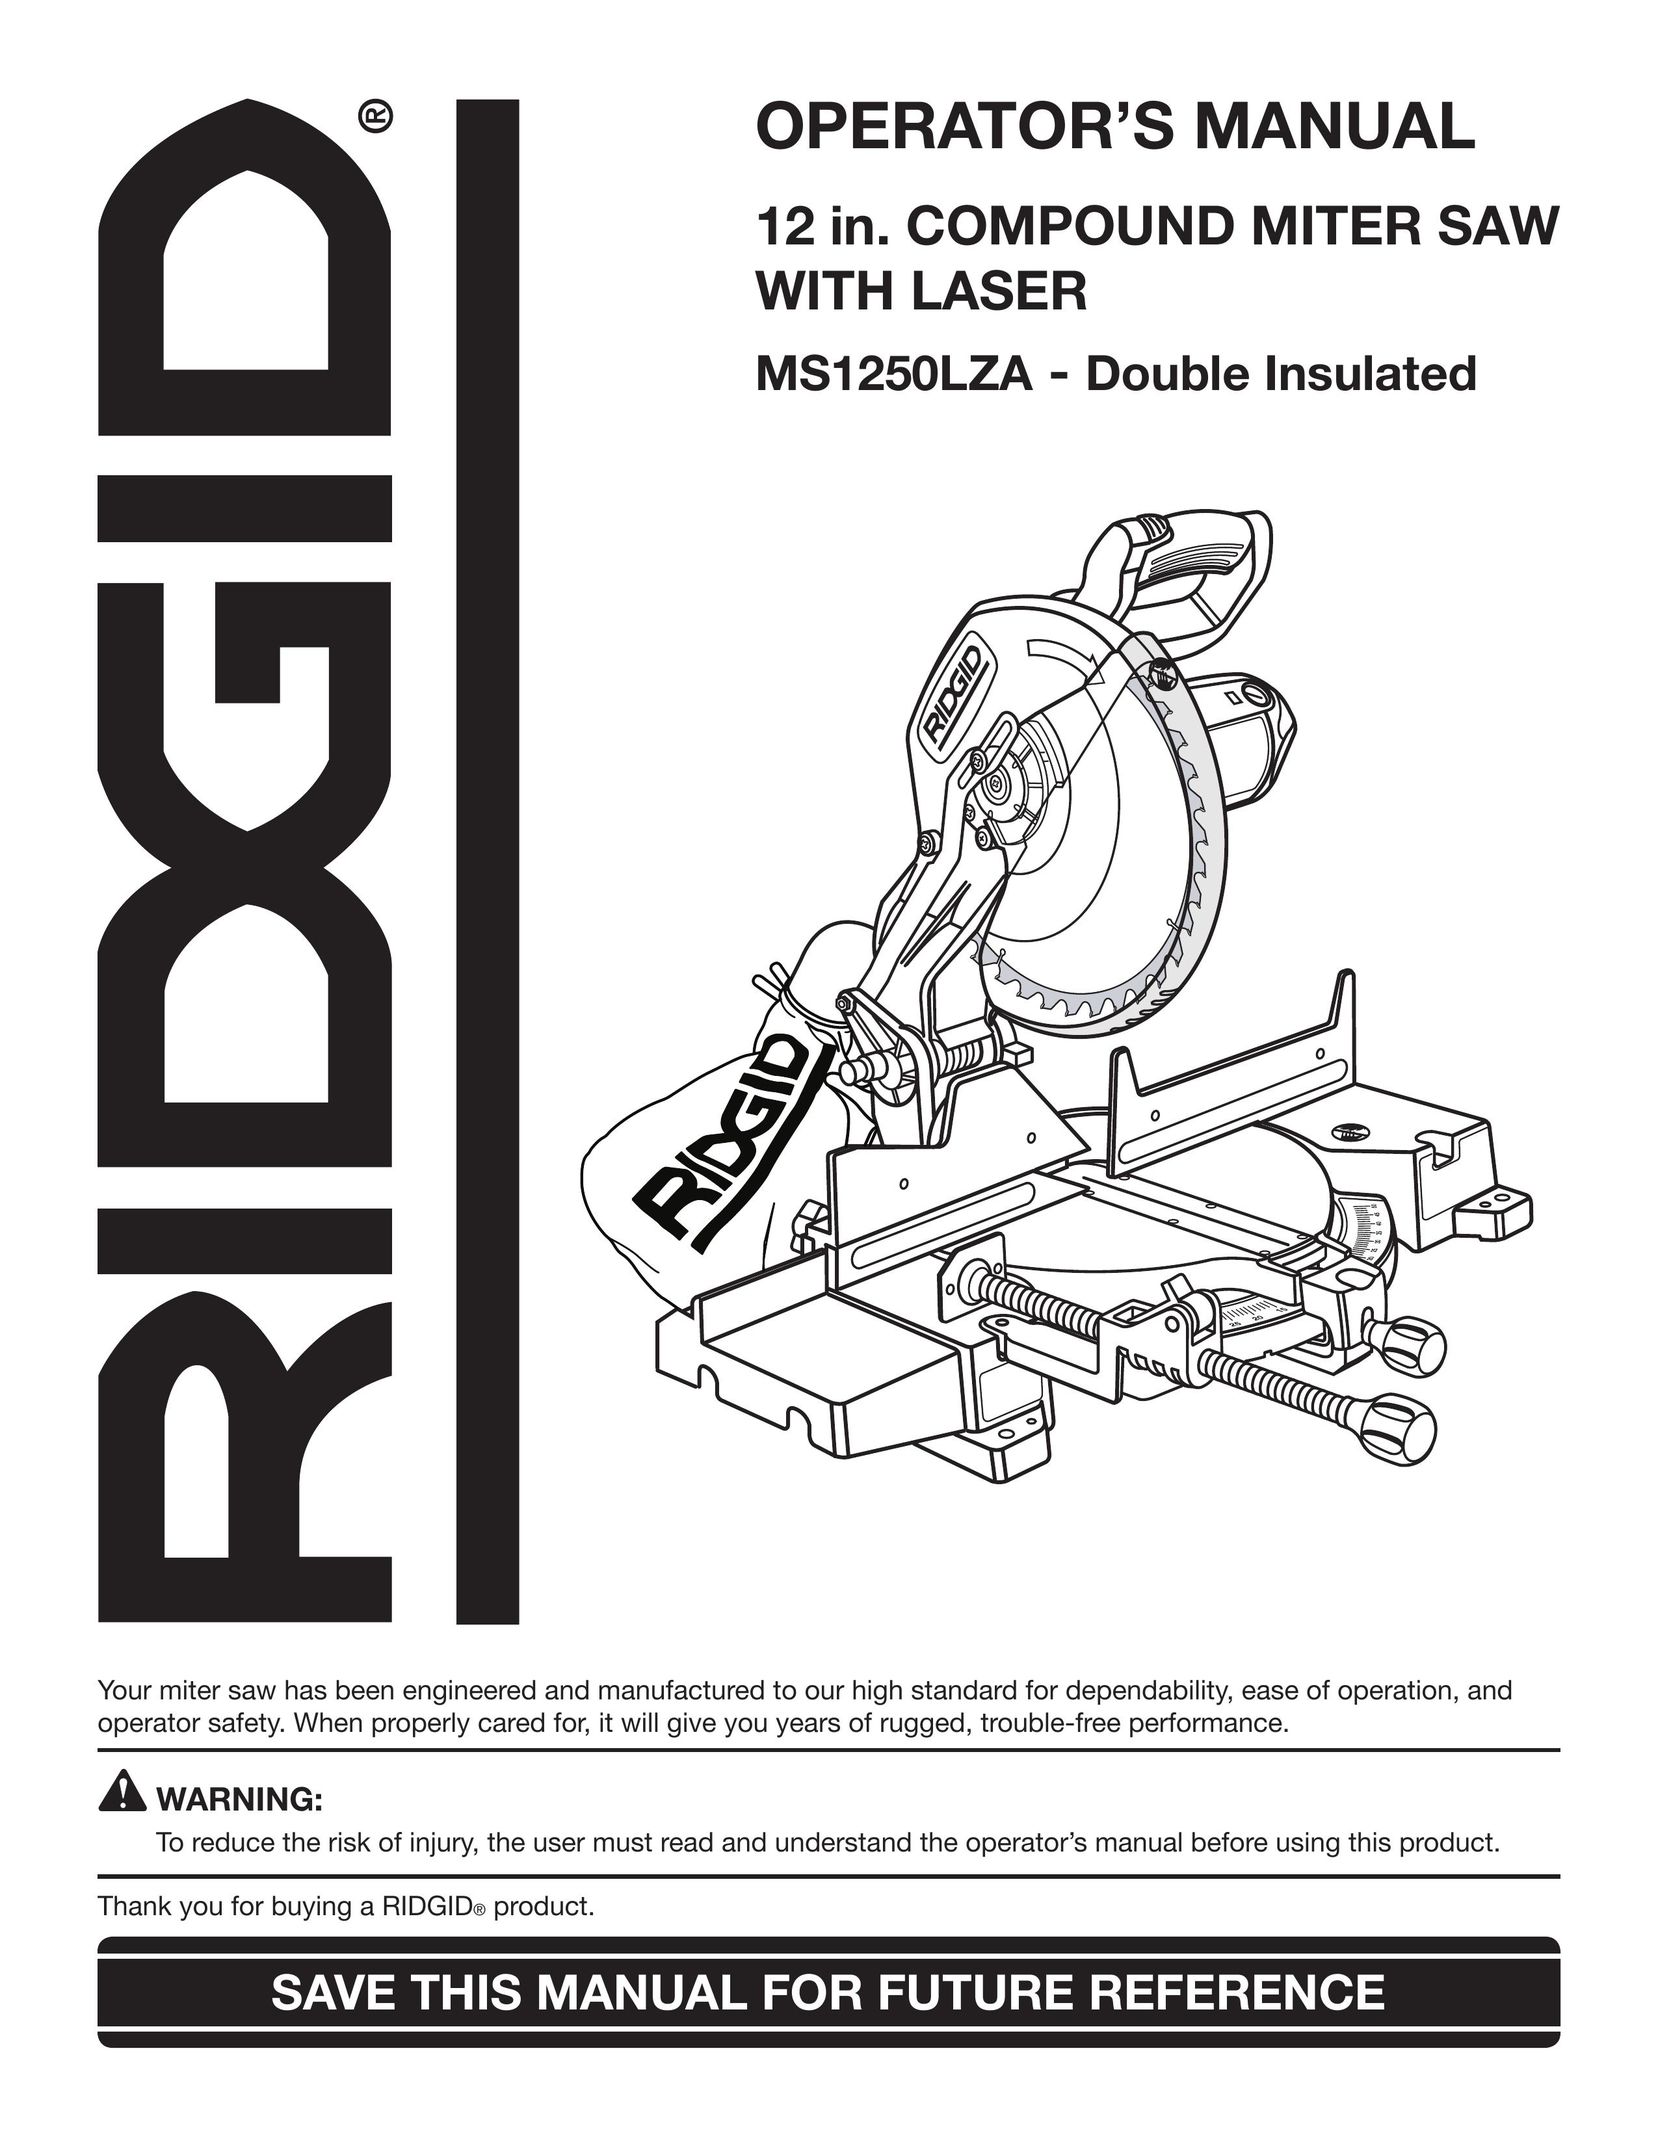 RIDGID MS1250LZA Saw User Manual